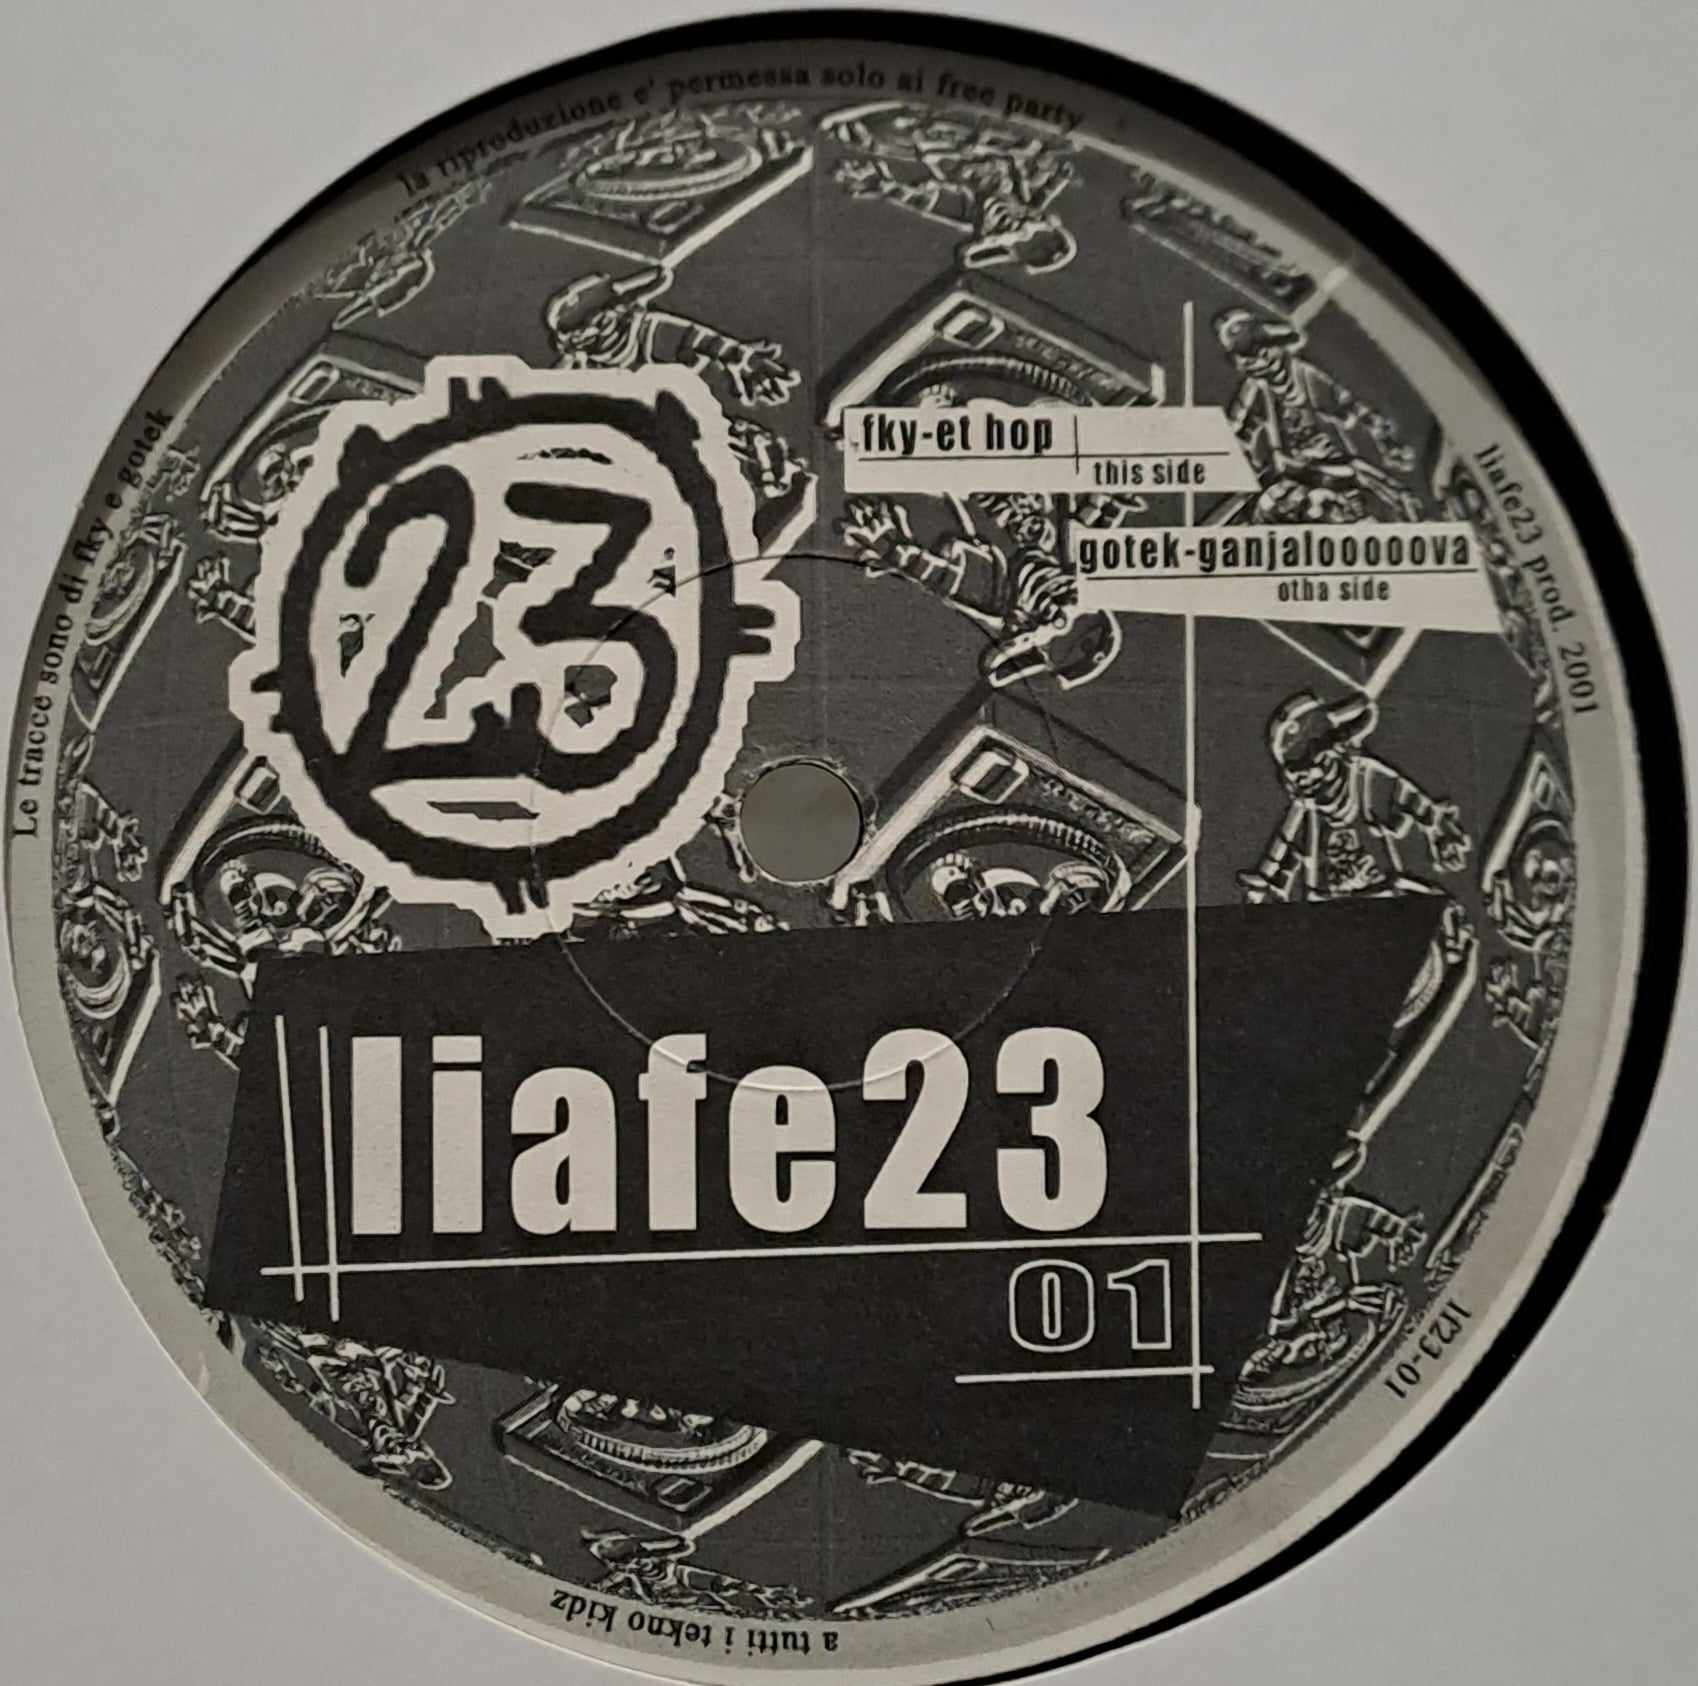 Liafe 23 01 - vinyle freetekno